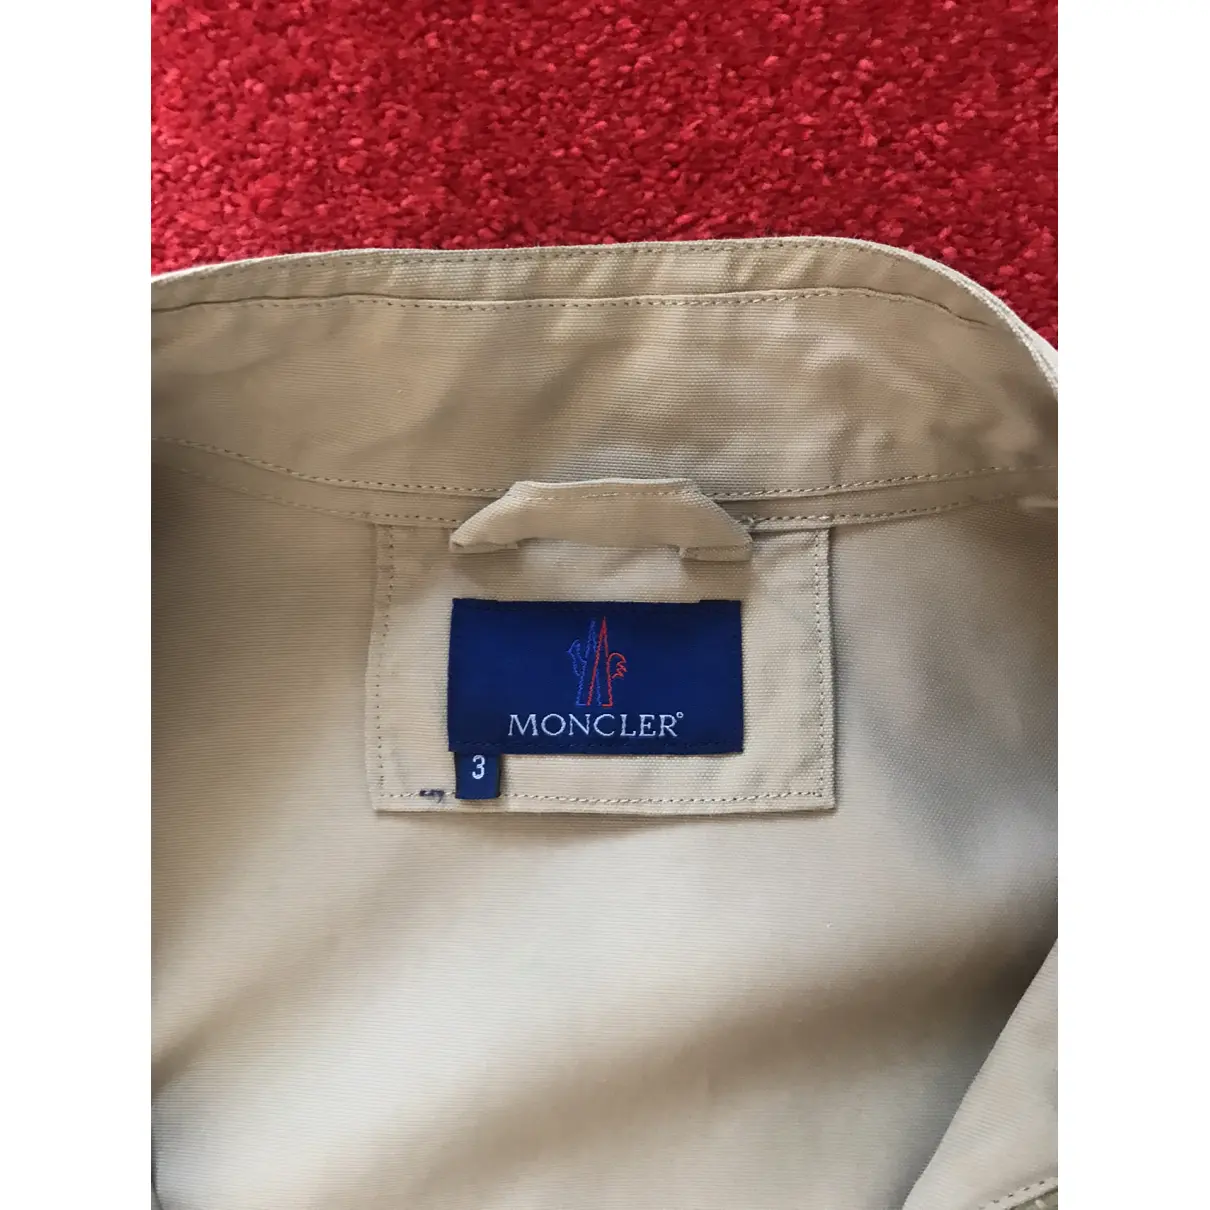 Buy Moncler Jacket online - Vintage